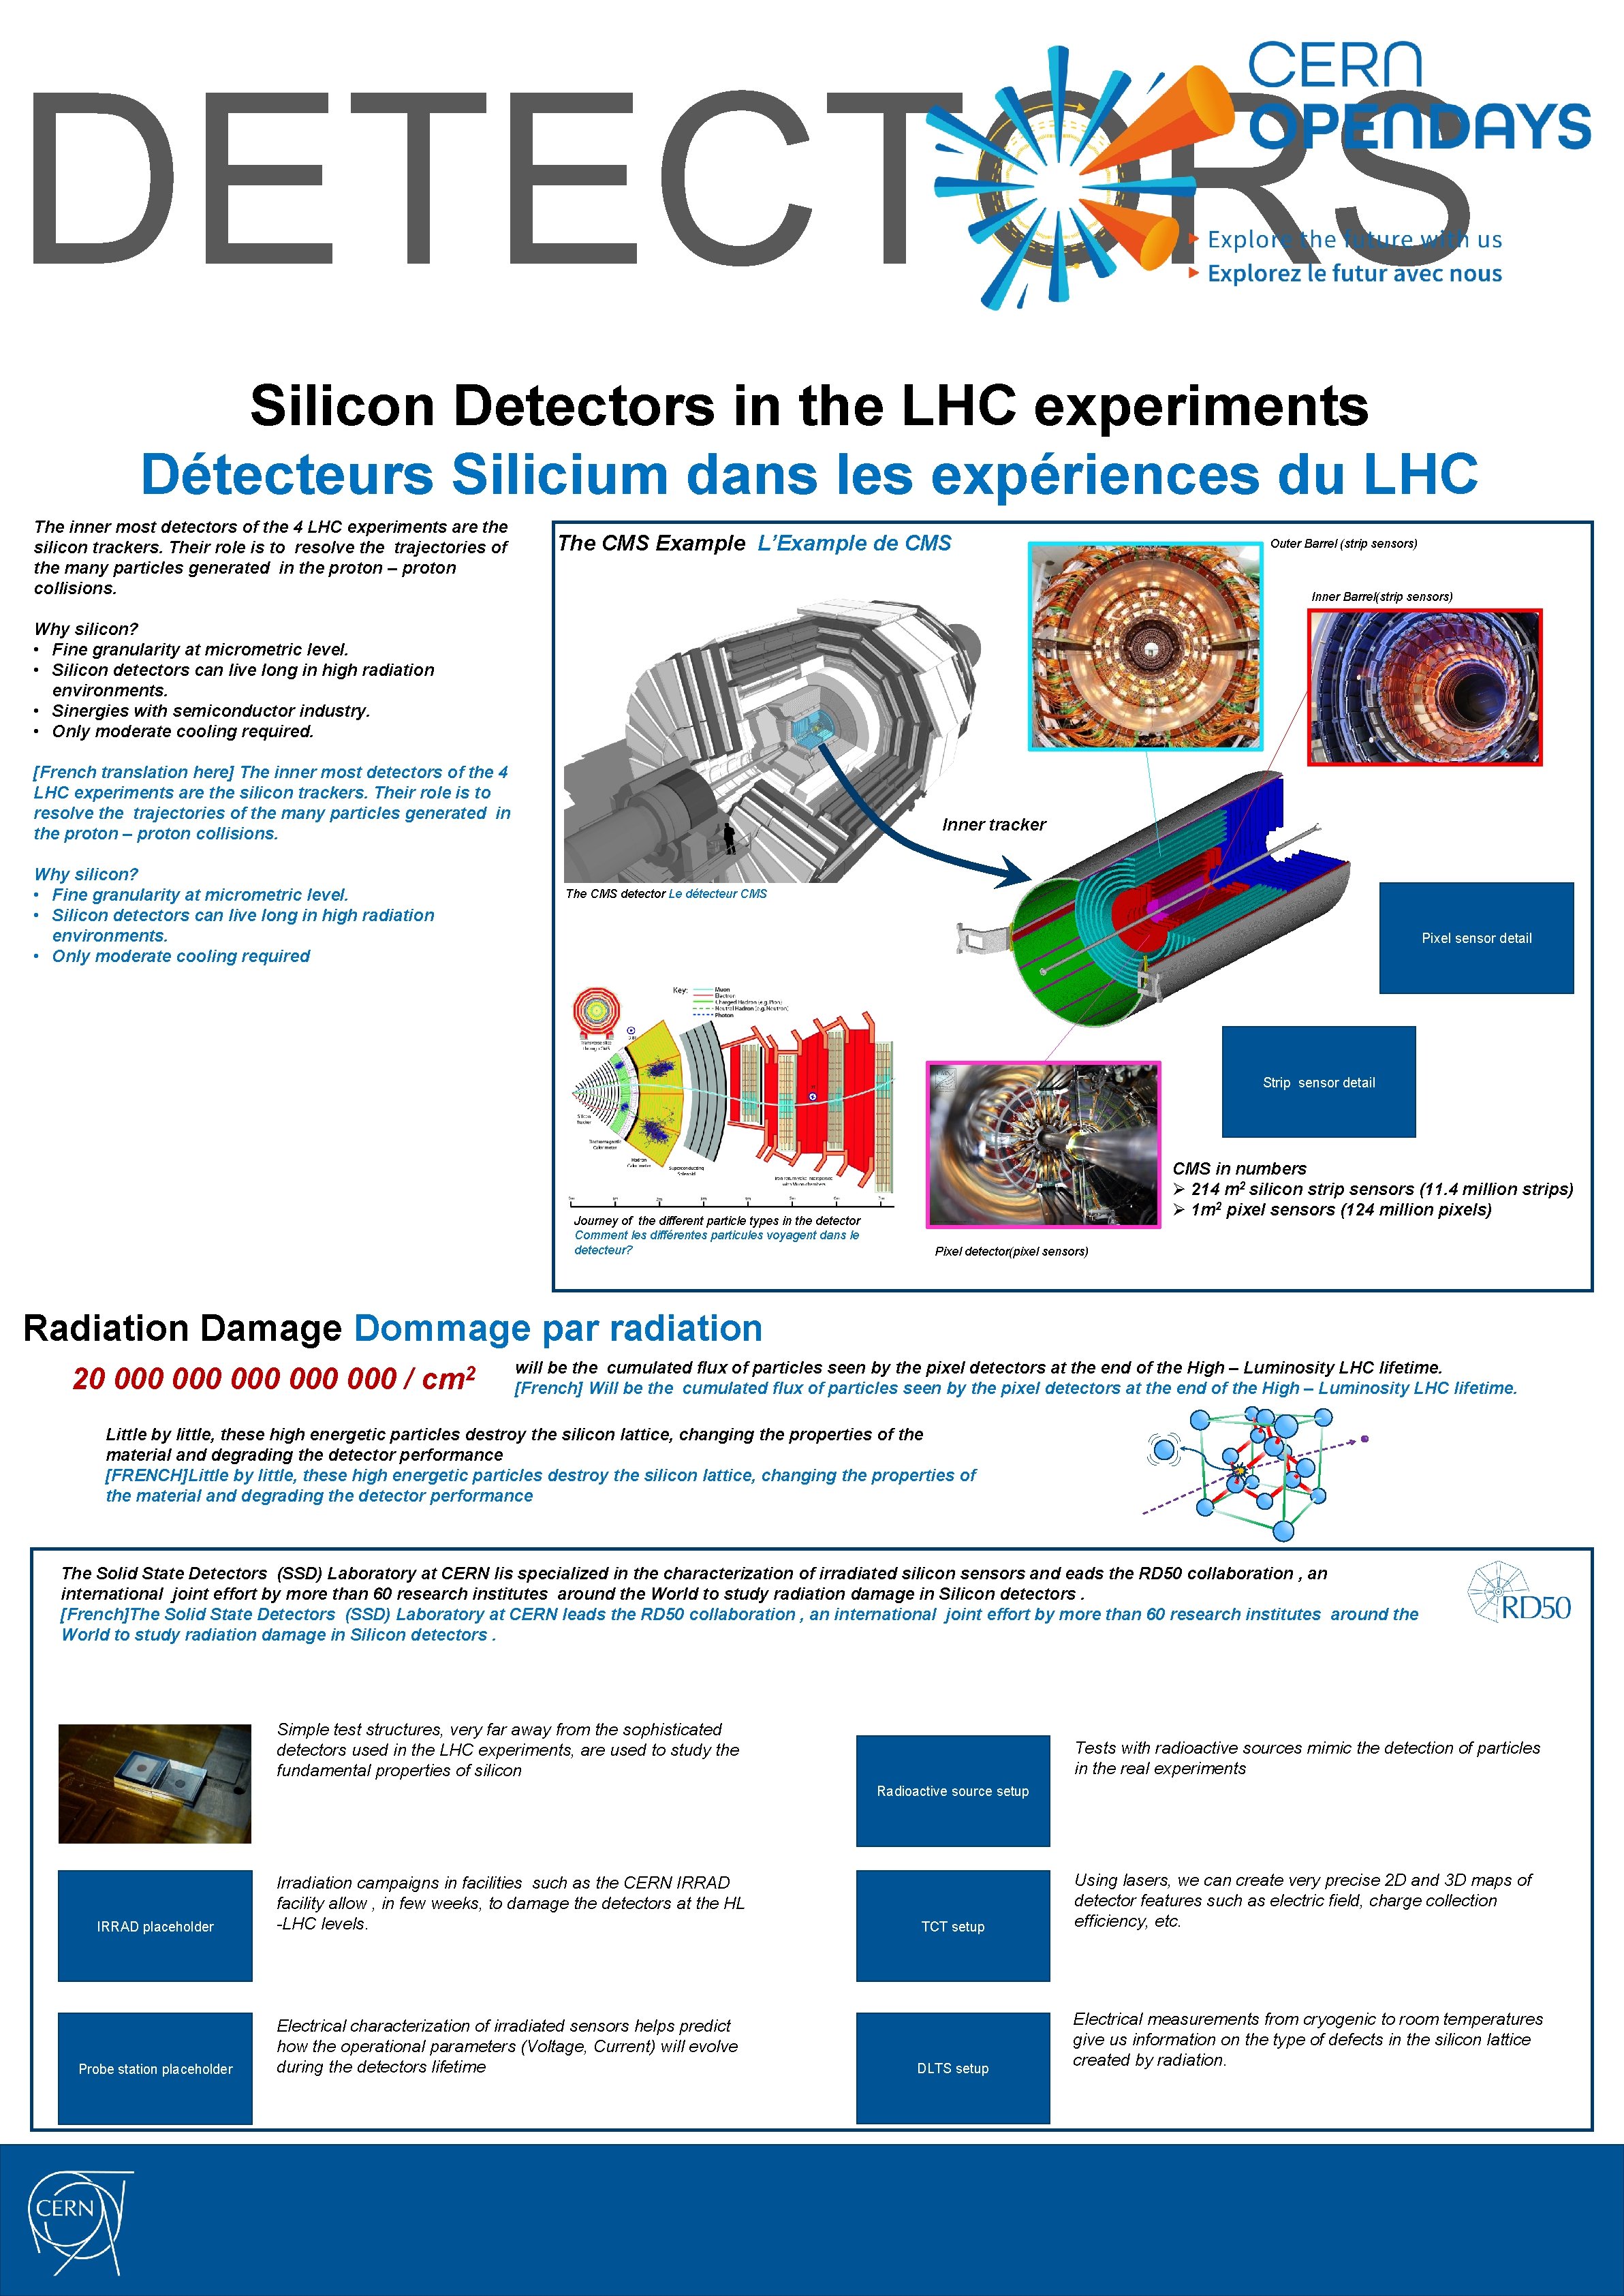 DETECTORS Silicon Detectors in the LHC experiments Détecteurs Silicium dans les expériences du LHC